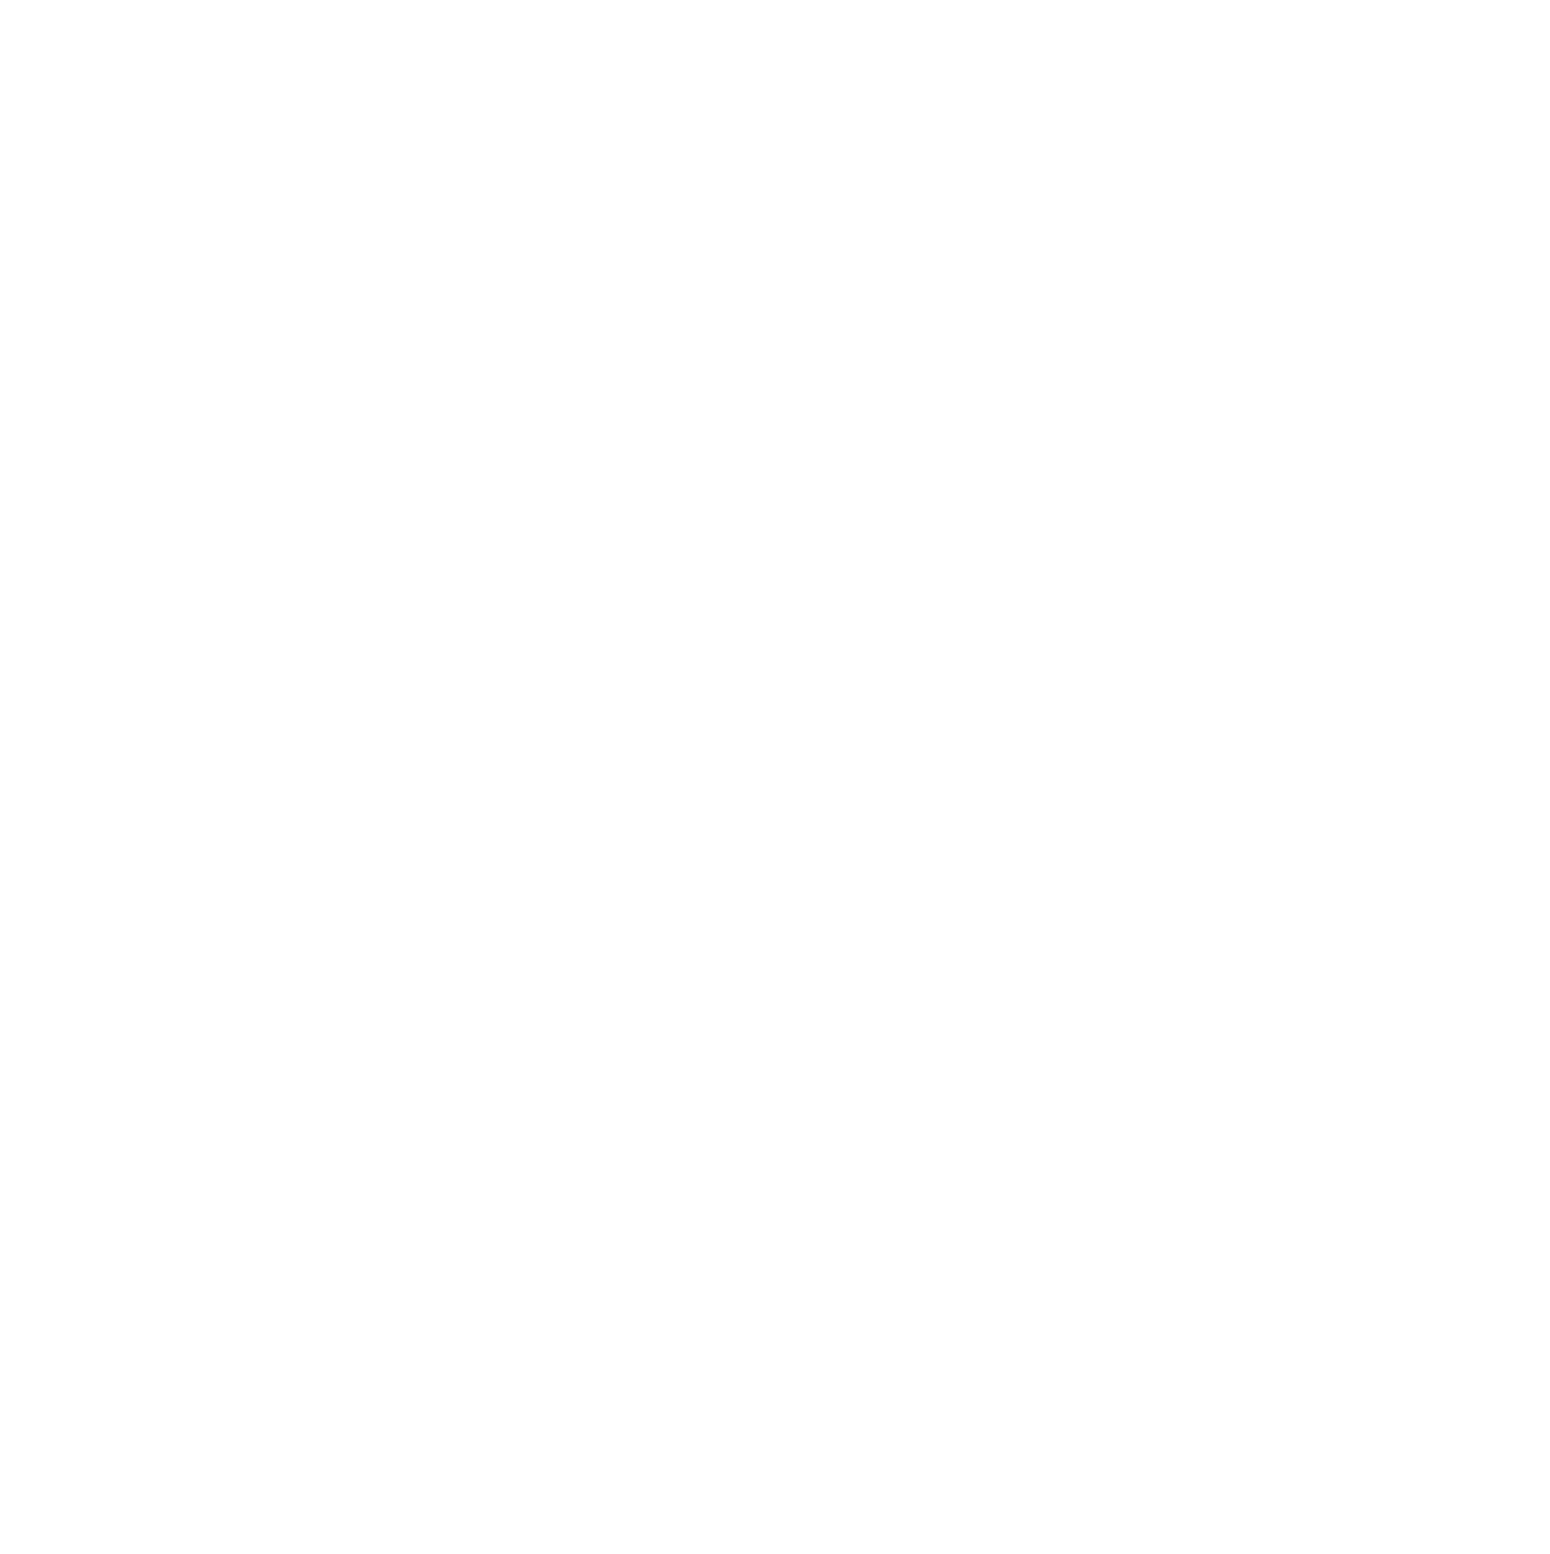 Munters Group AB logo pour fonds sombres (PNG transparent)